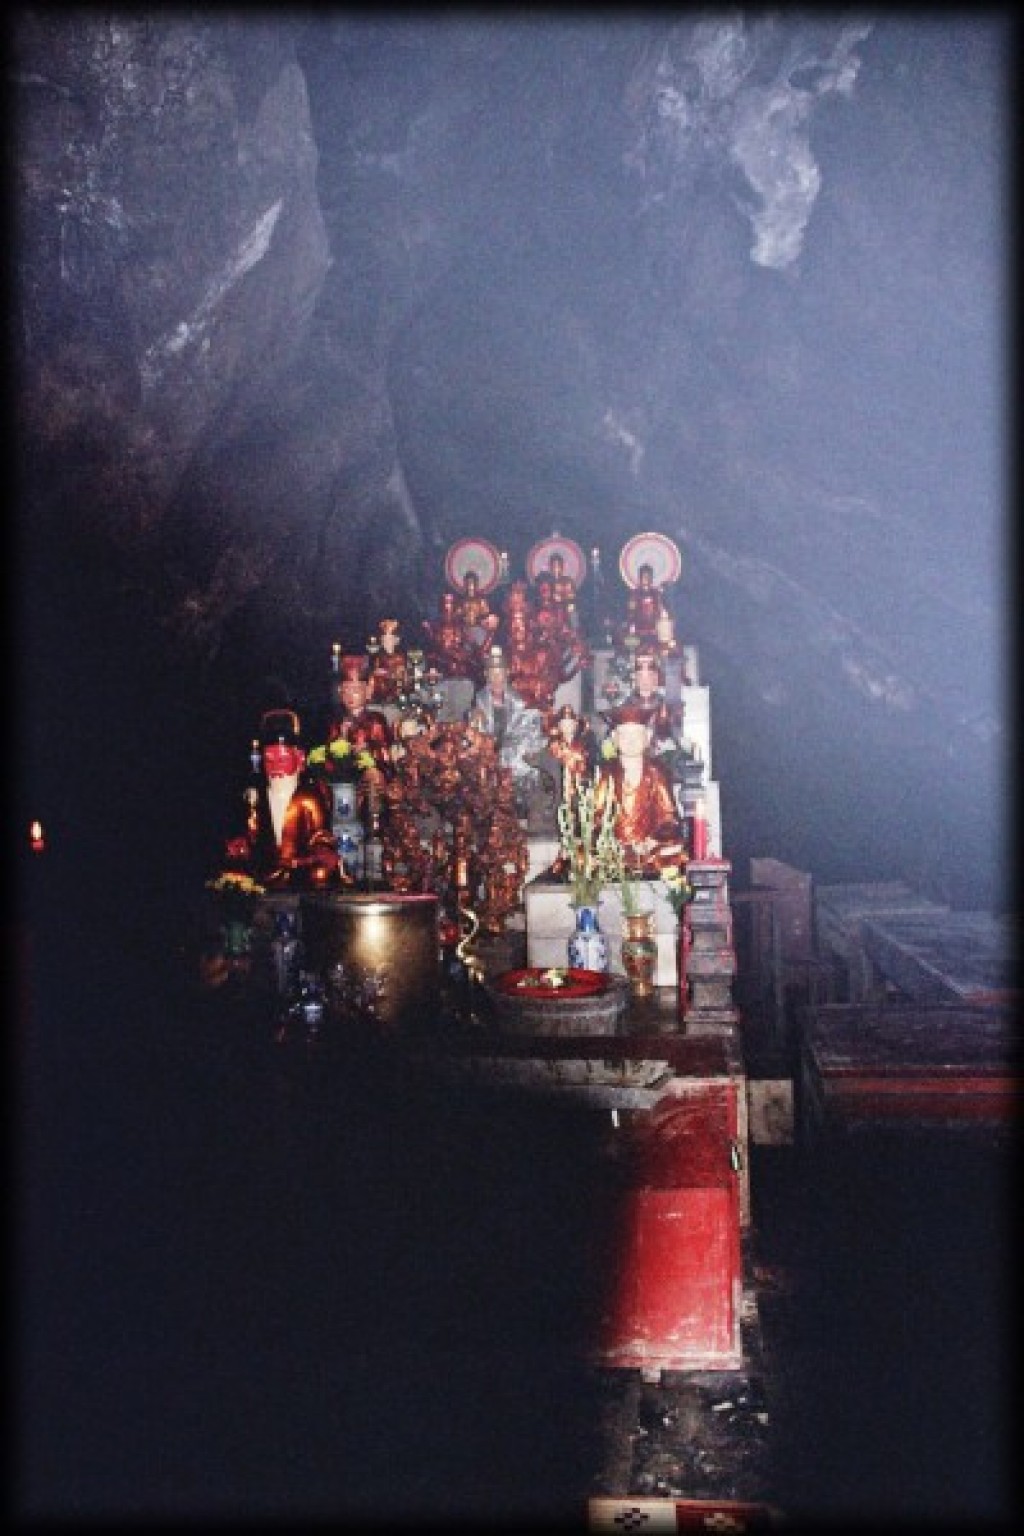 The altar inside the Perfume Pagoda.